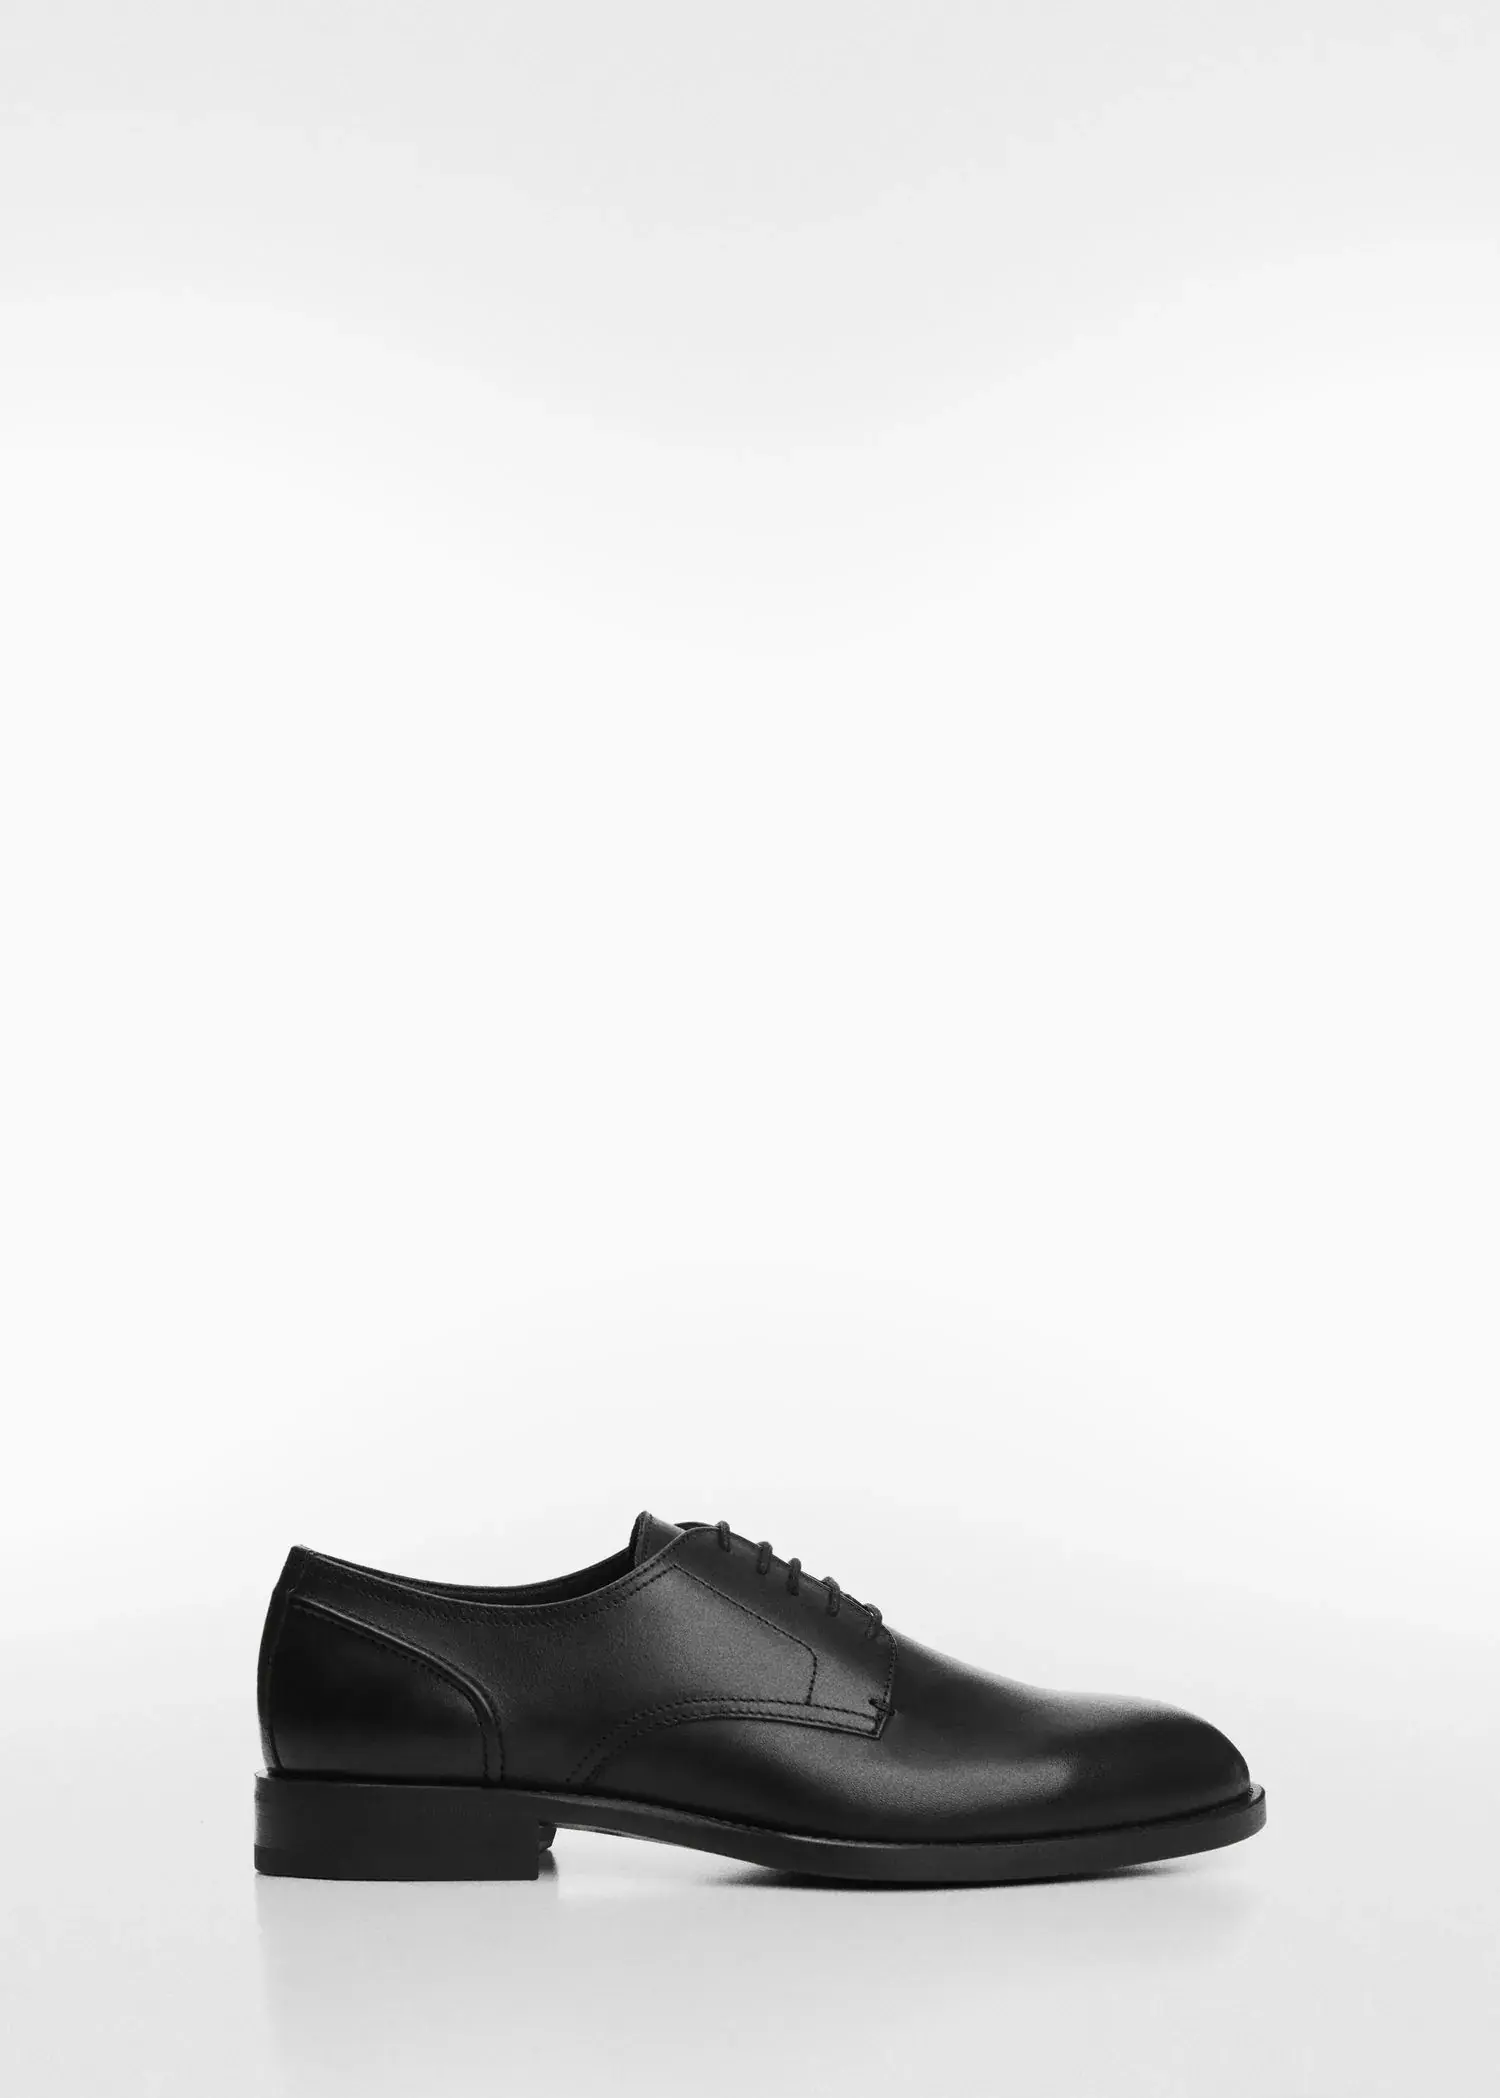 Mango Leather suit shoes. 1